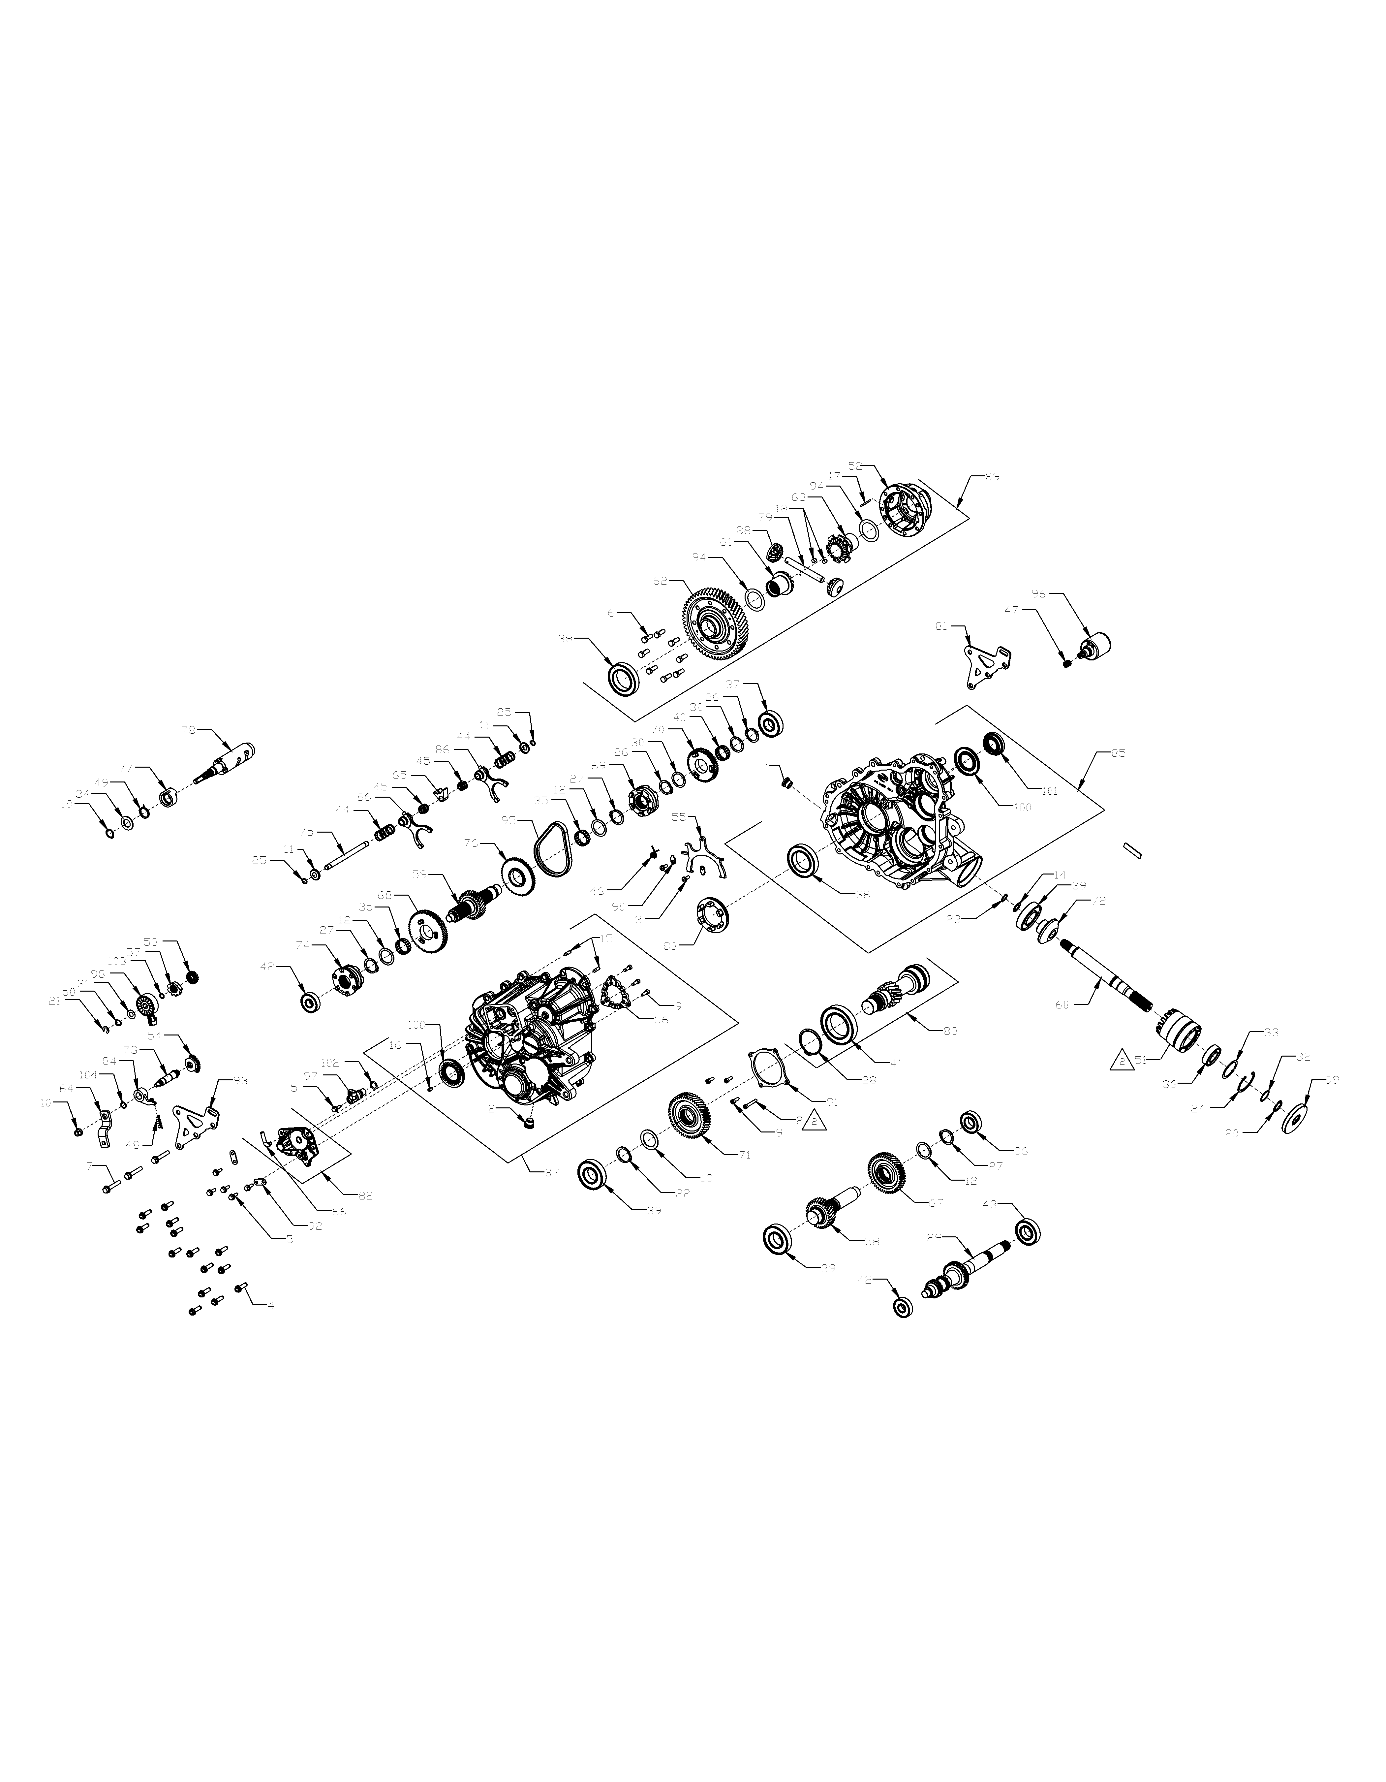 Foto diagrama Polaris que contem a peça 3236295